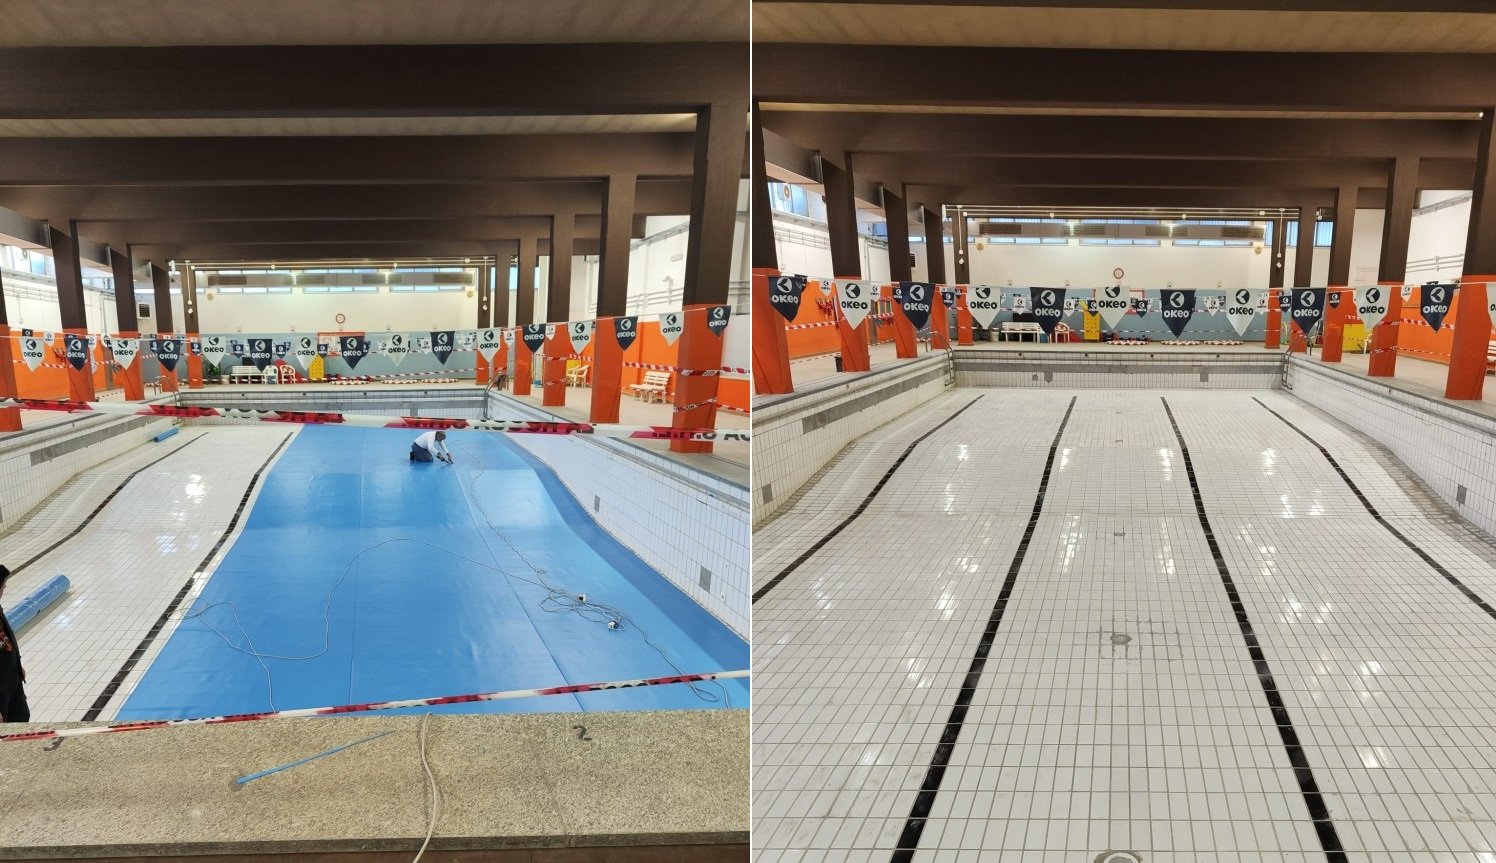 Ristrutturazione alla piscina Vochieri di Alessandria: “Il 28 febbraio i lavori saranno conclusi”